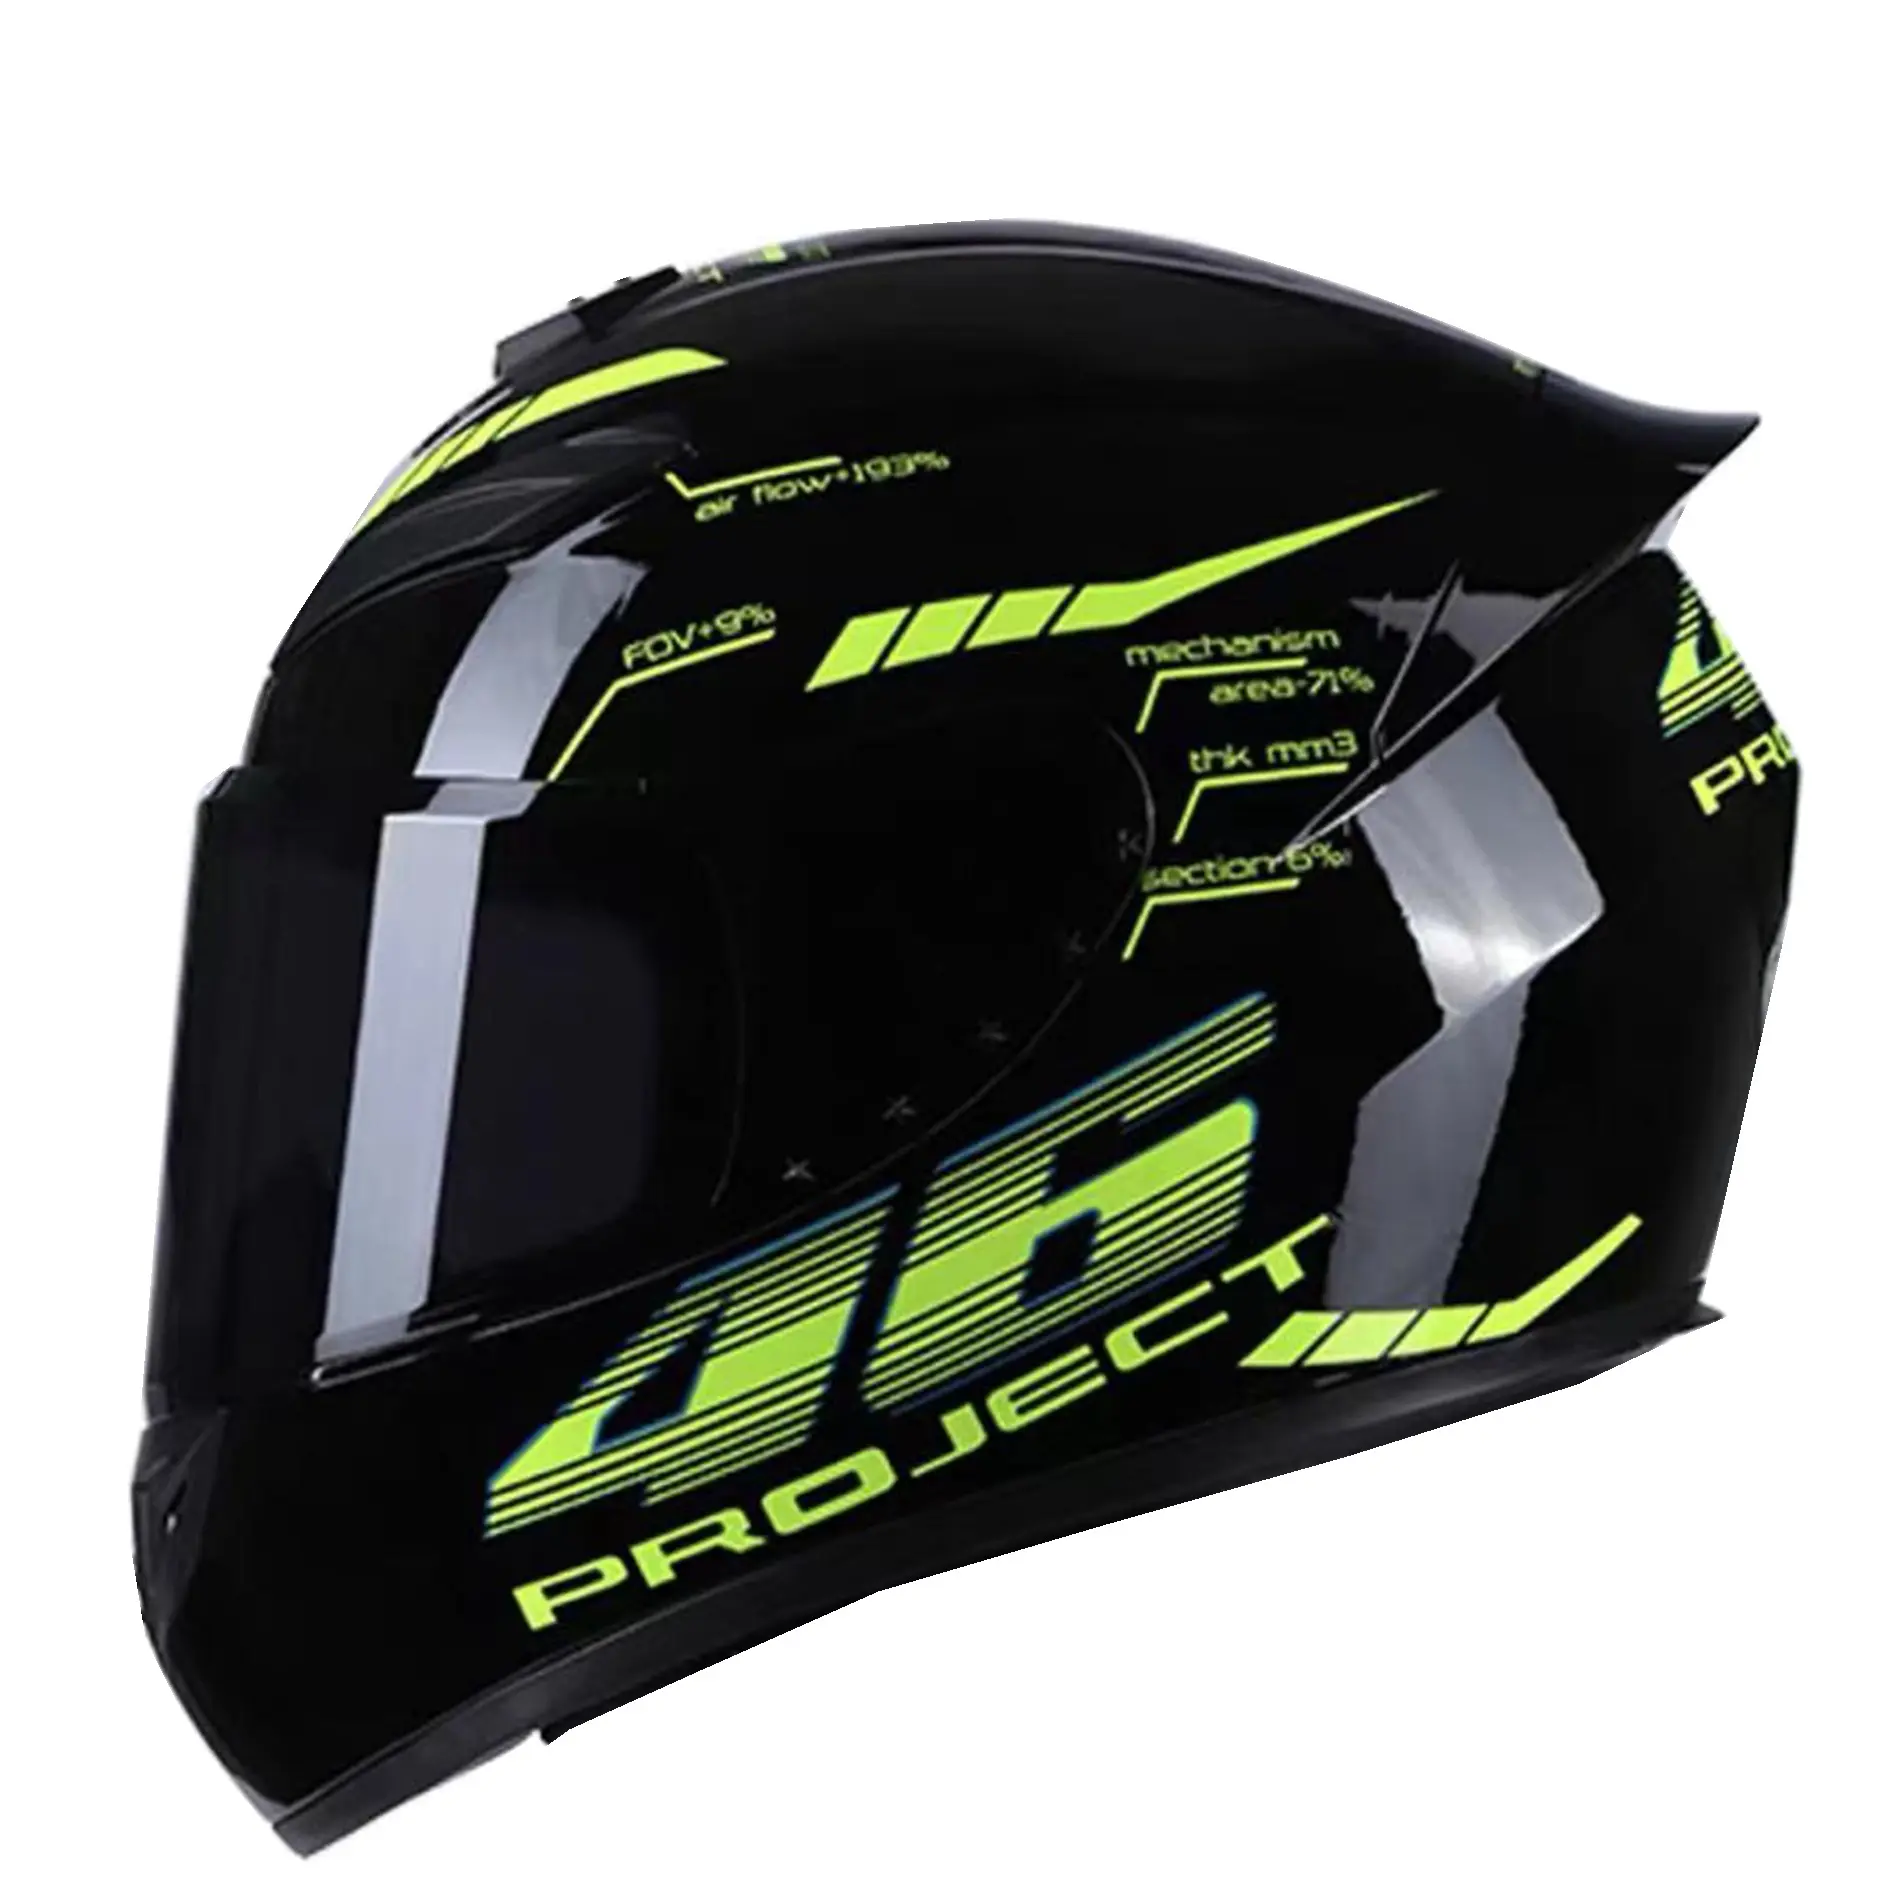 En kaliteli nokta motosiklet kaskları yeni stil sıcak satış özel motosiklet kask tam yüz Dot sertifikalı motosiklet kaskları helm